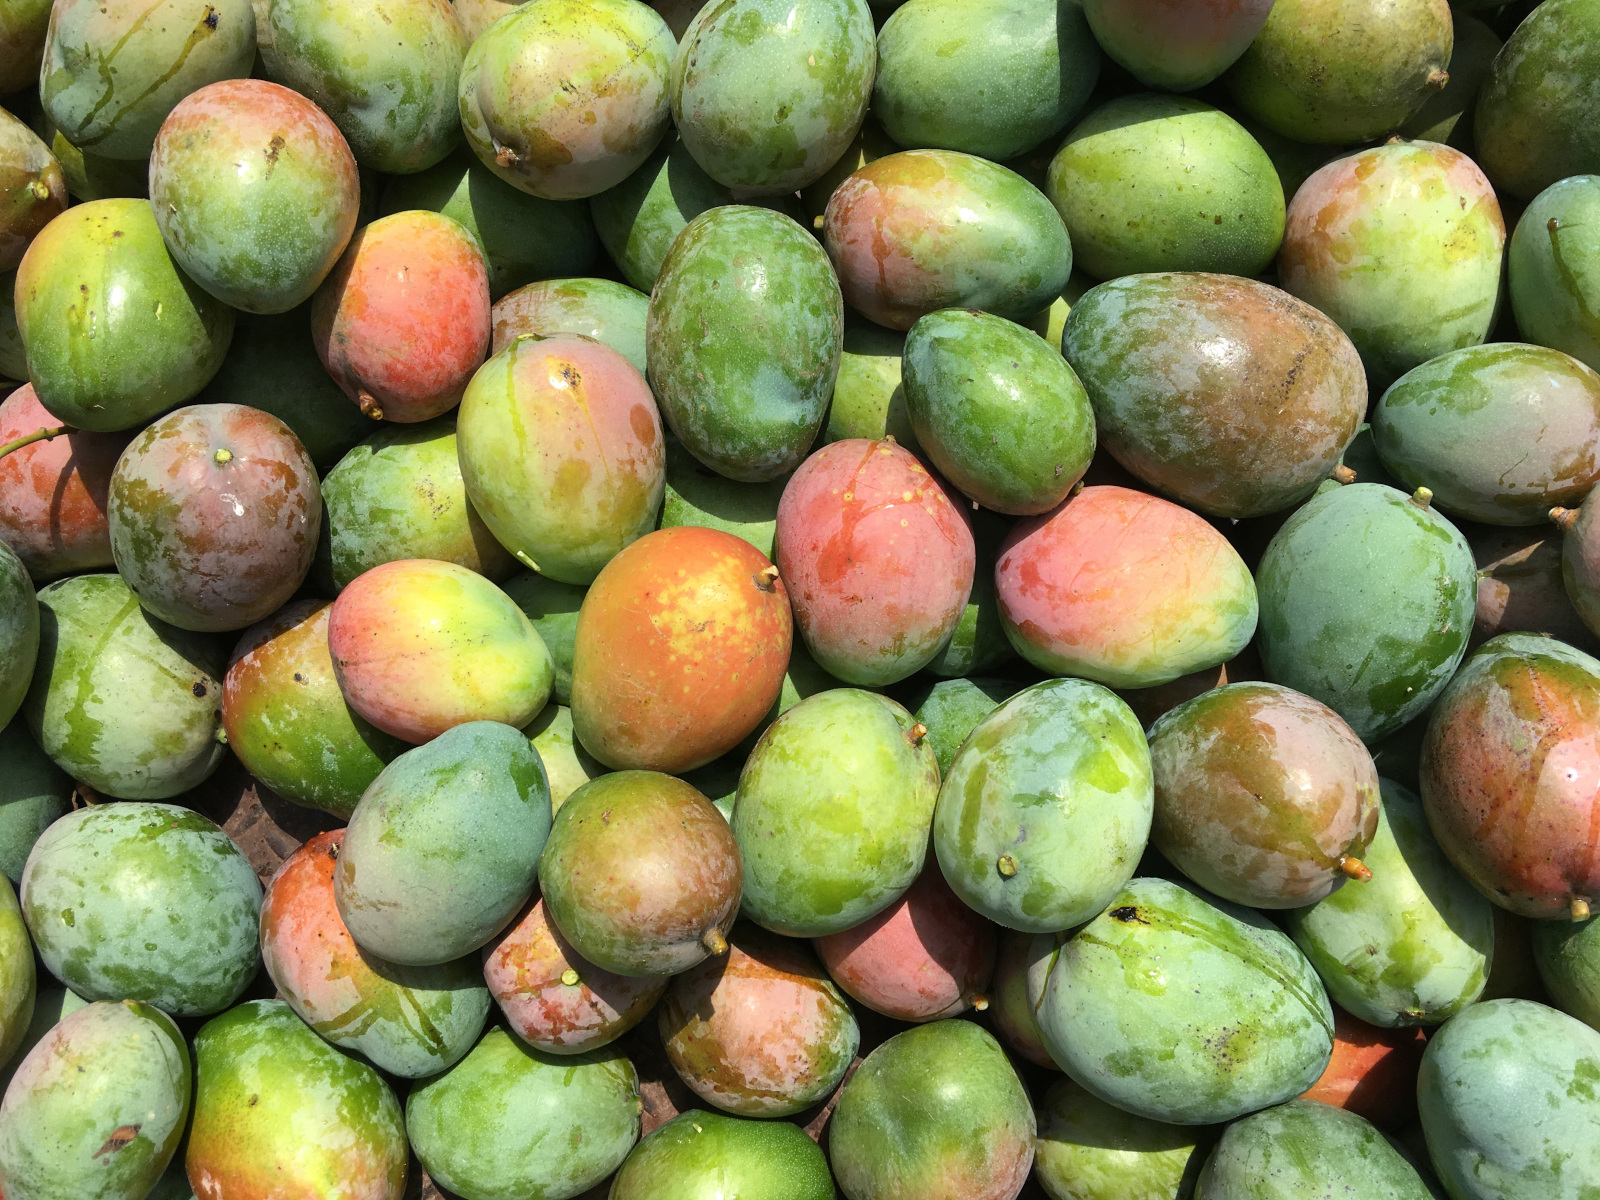 Die geernteten Mangos werden zum Großteil auf dem Markt verkauft